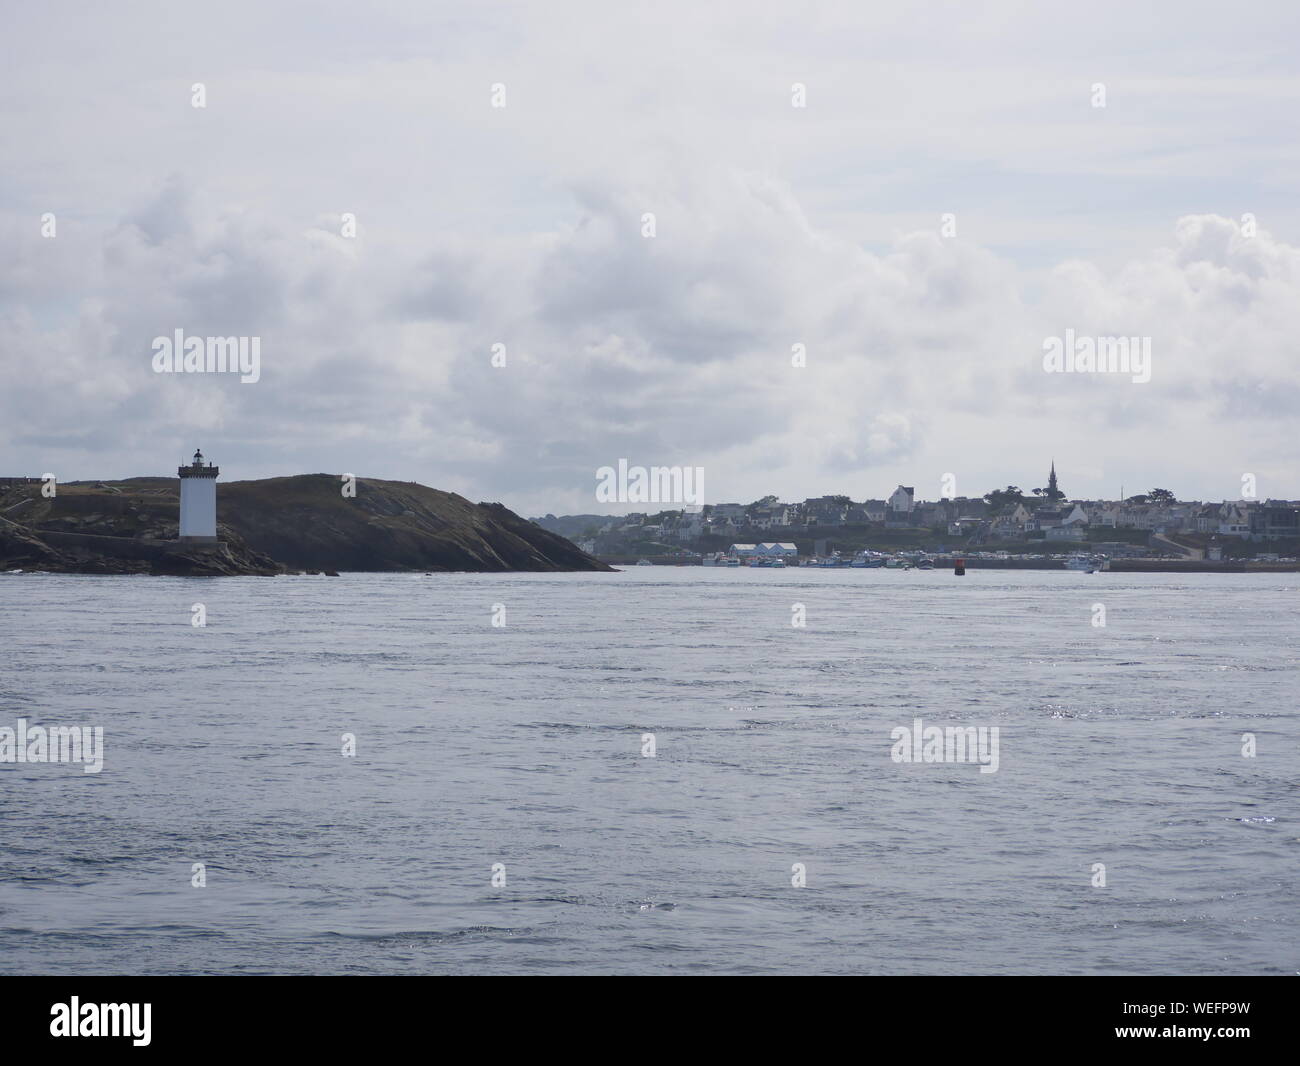 Phare de kermorvan , phare du conquet , entrée au port du conquet ,phare blanc et carré , foto des cotes bretonnes prezzi depuis onu bateau en mer Foto Stock